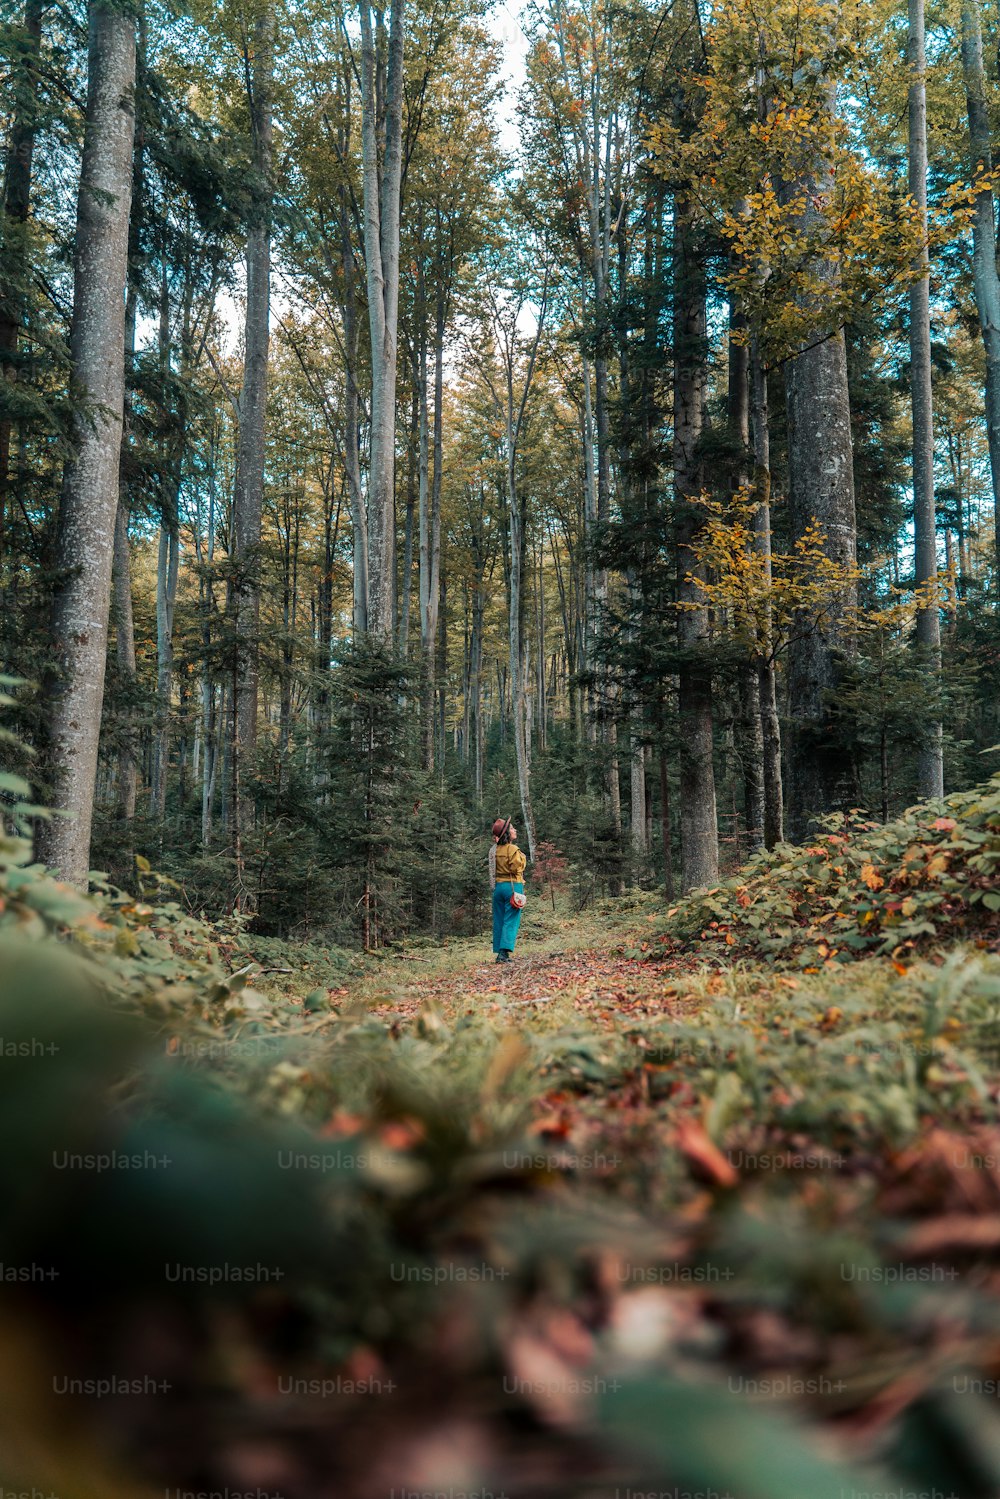 una persona caminando por un bosque con muchos árboles